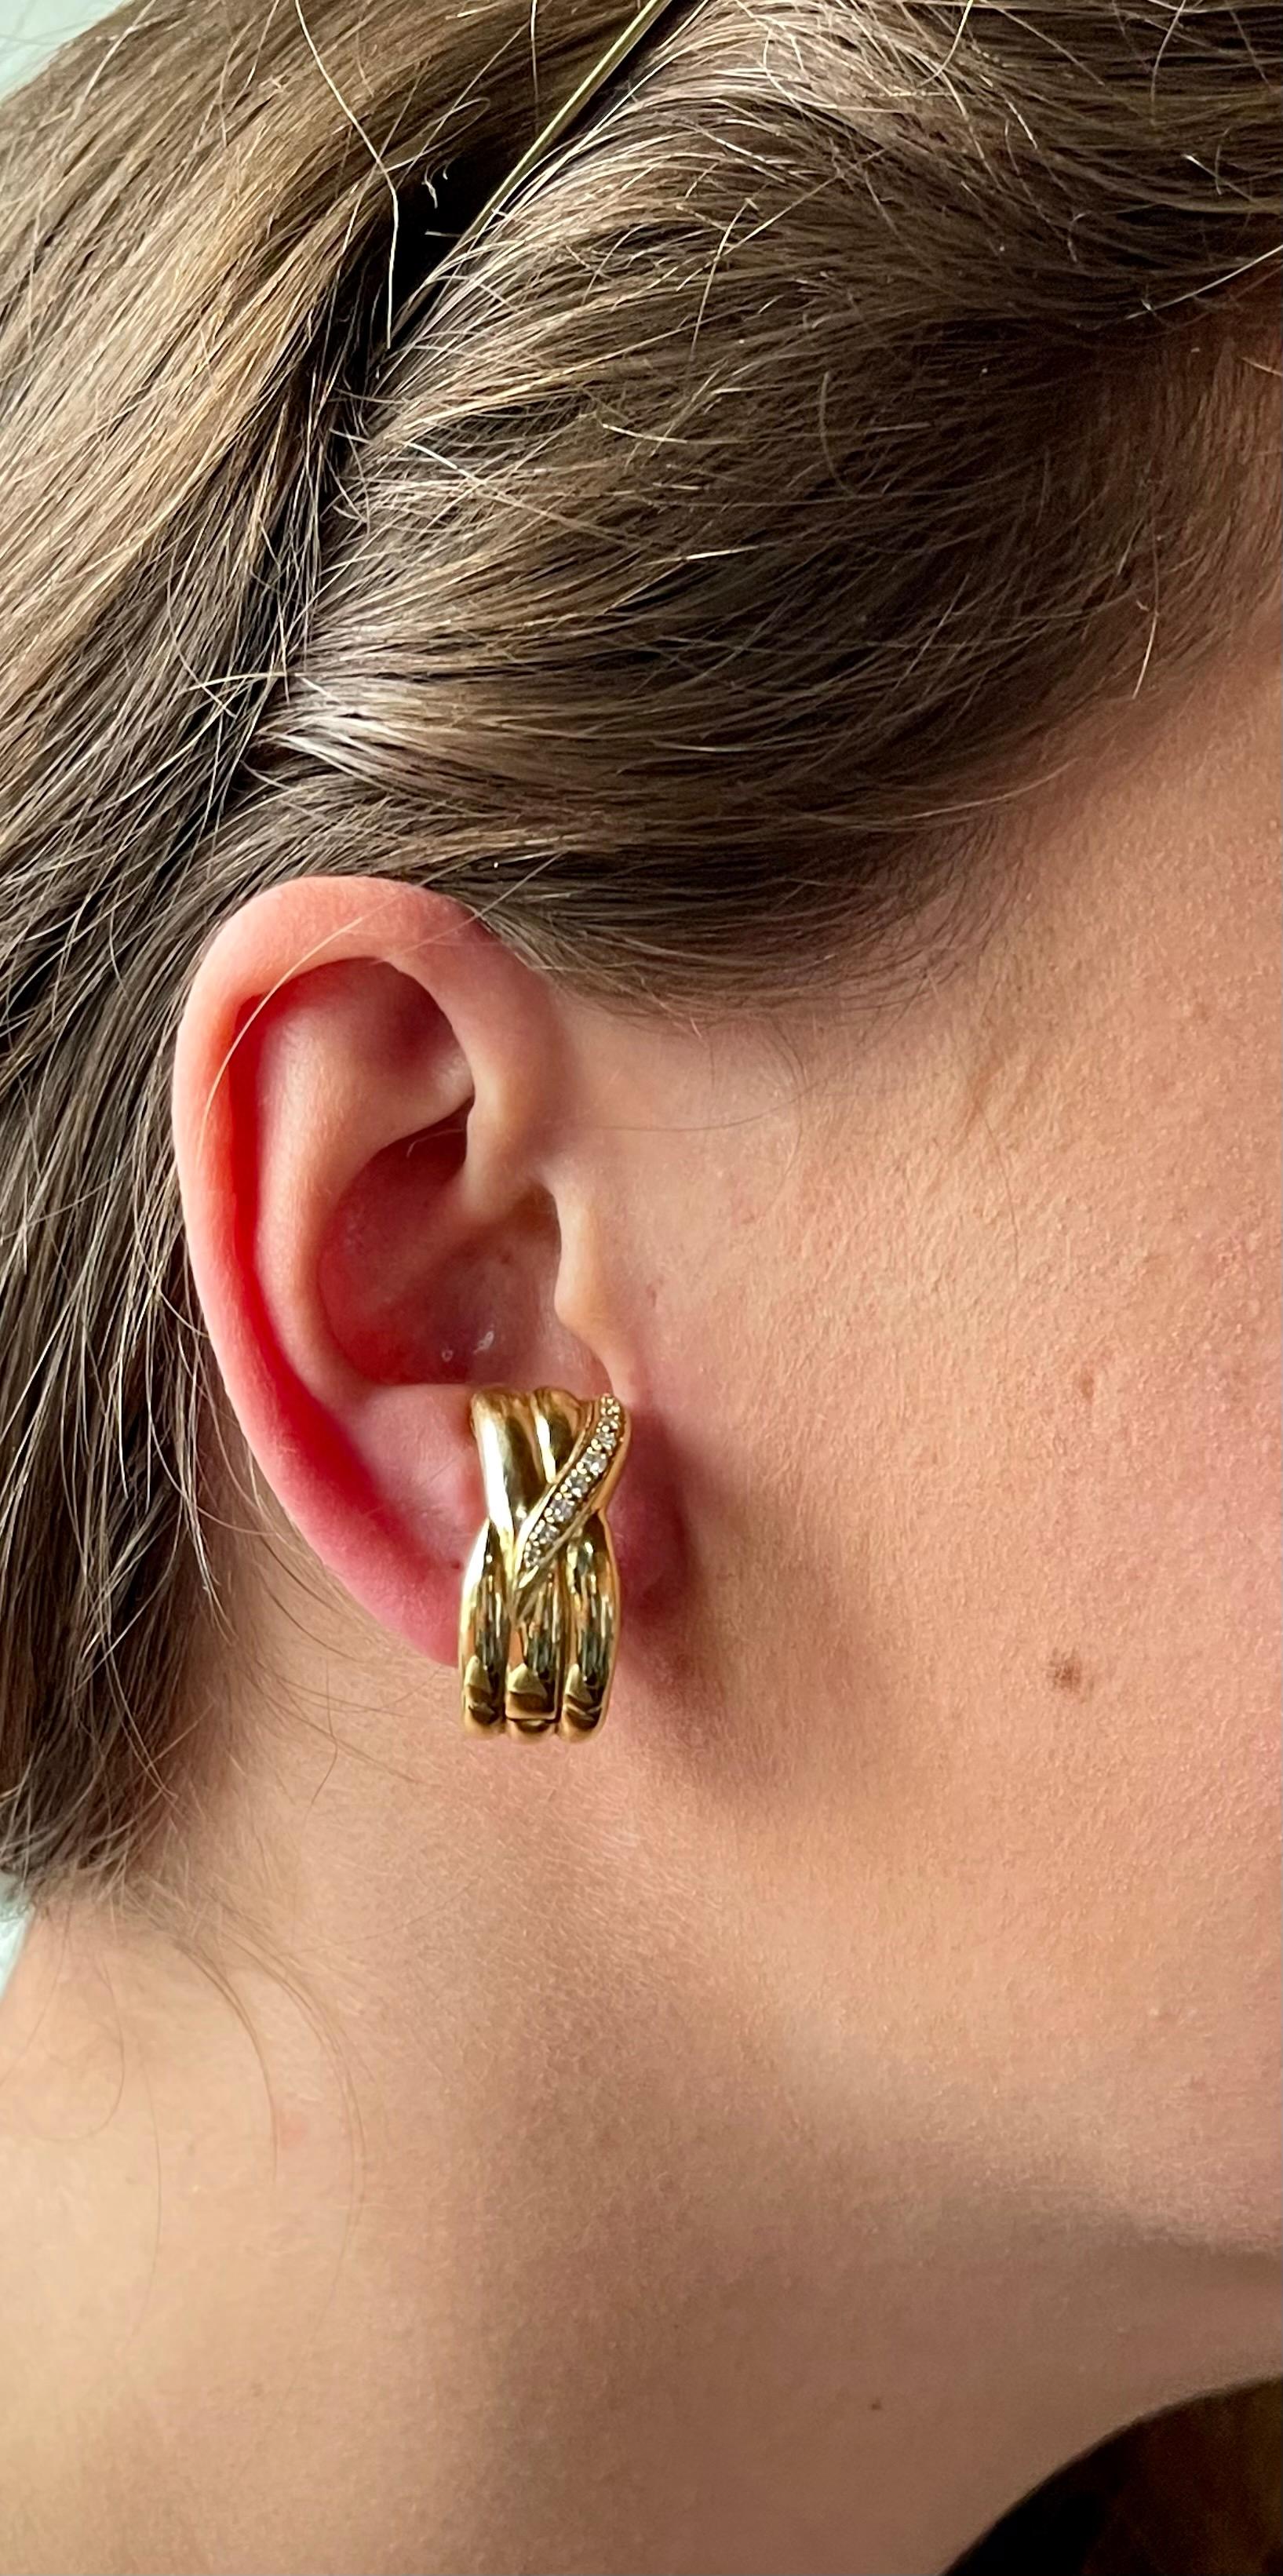 Massive Ohrringe aus 18 K Gelbgold, besetzt mit 18 Diamanten im Brillantschliff. Datiert aus dem Jahr 1980. 31.31 Gramm.
Er misst 1,2 cm in der Breite und ist 2,5 cm lang. 
Meisterhaft handgefertigtes Stück! Echtheit und Geld zurück ist garantiert.